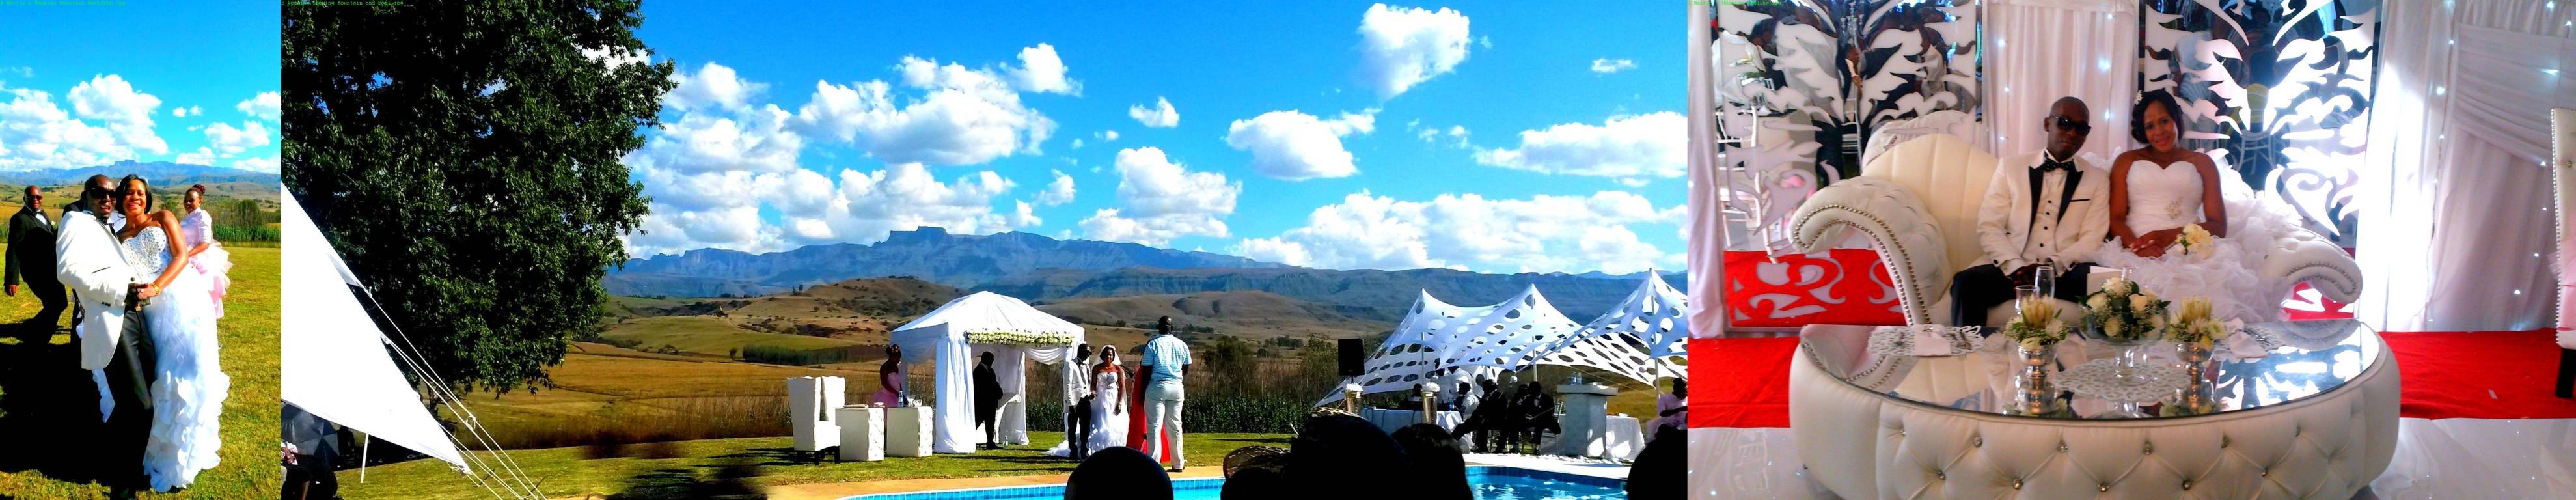 Weddings - River Crossing Berg Accommodation, Central Drakensberg, KZN